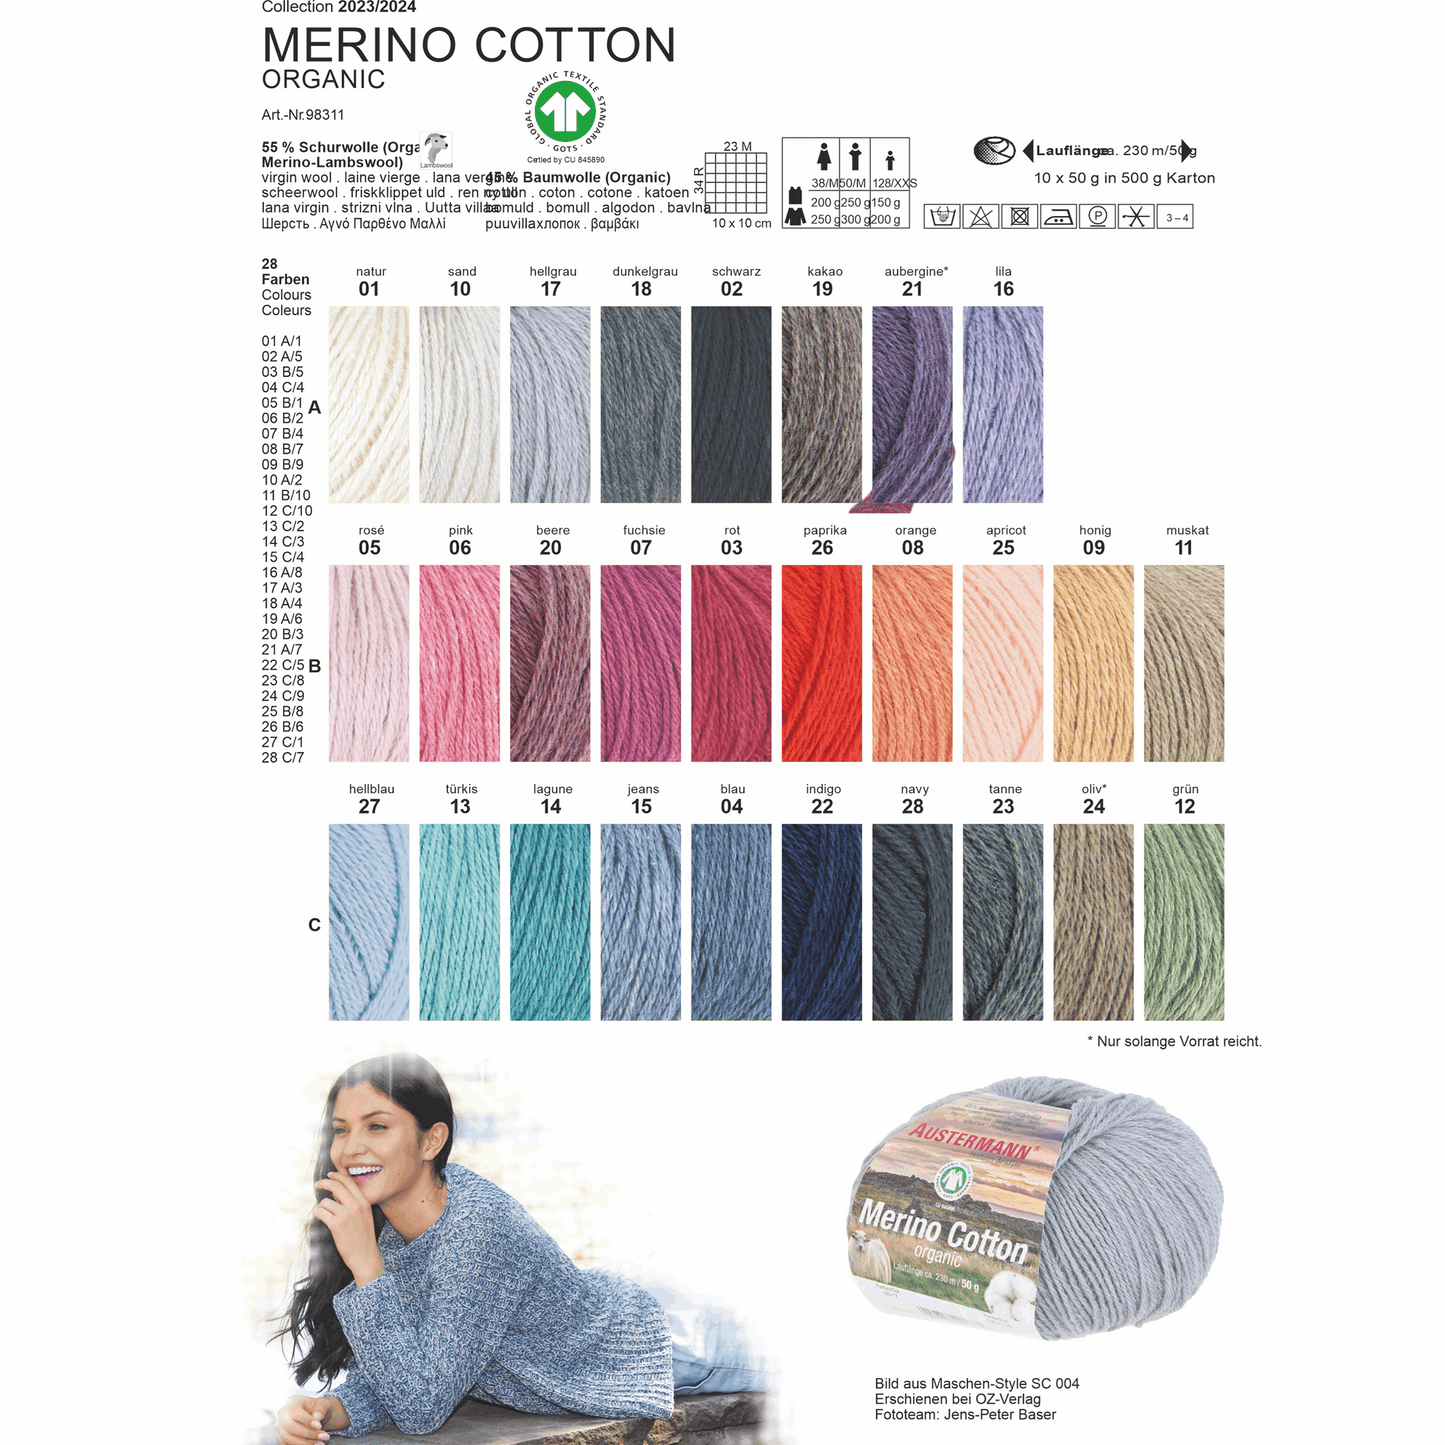 Schoeller-Austermann Gots Merino Cotton, 50g, 98311, Farbe rose 5